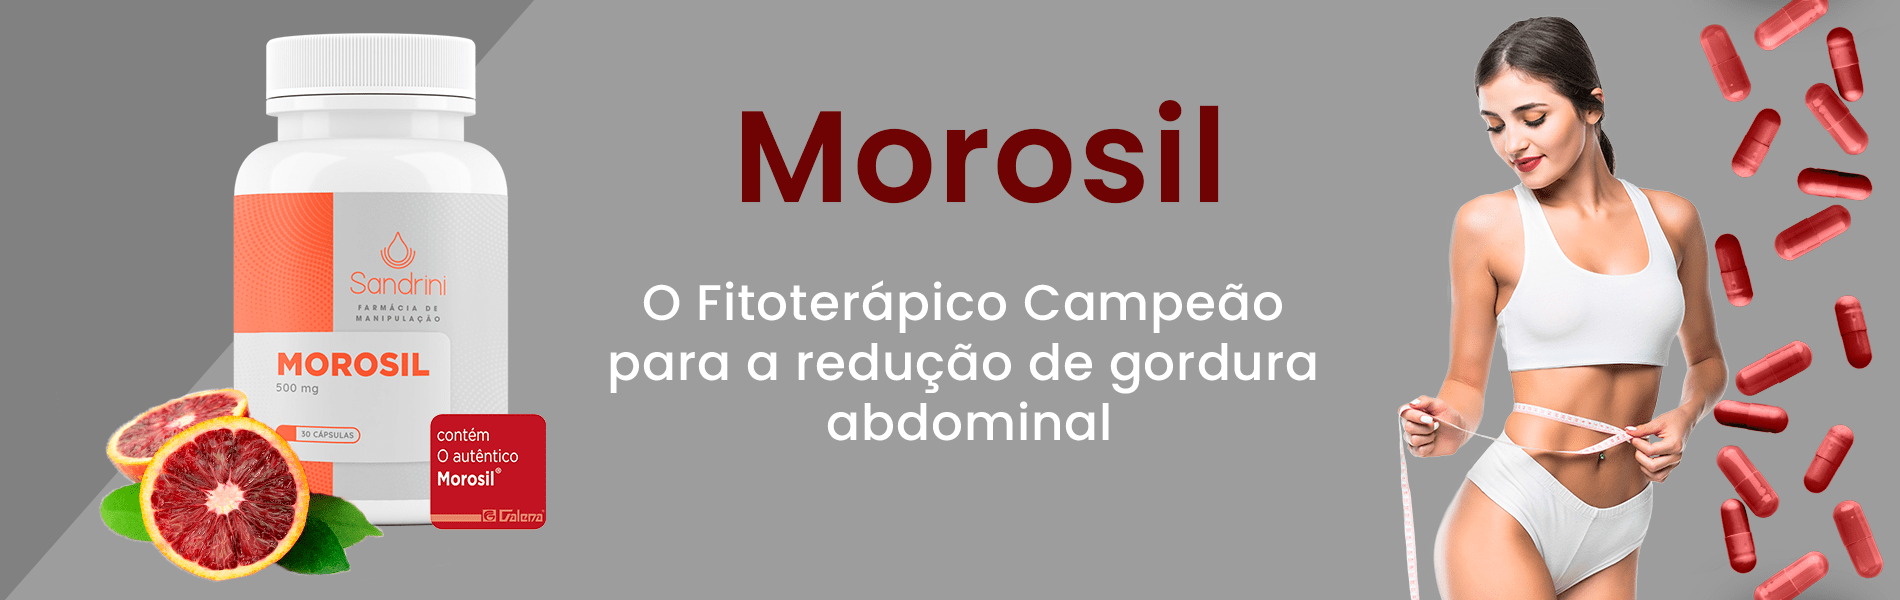 banner-morosil-1900x600-v03